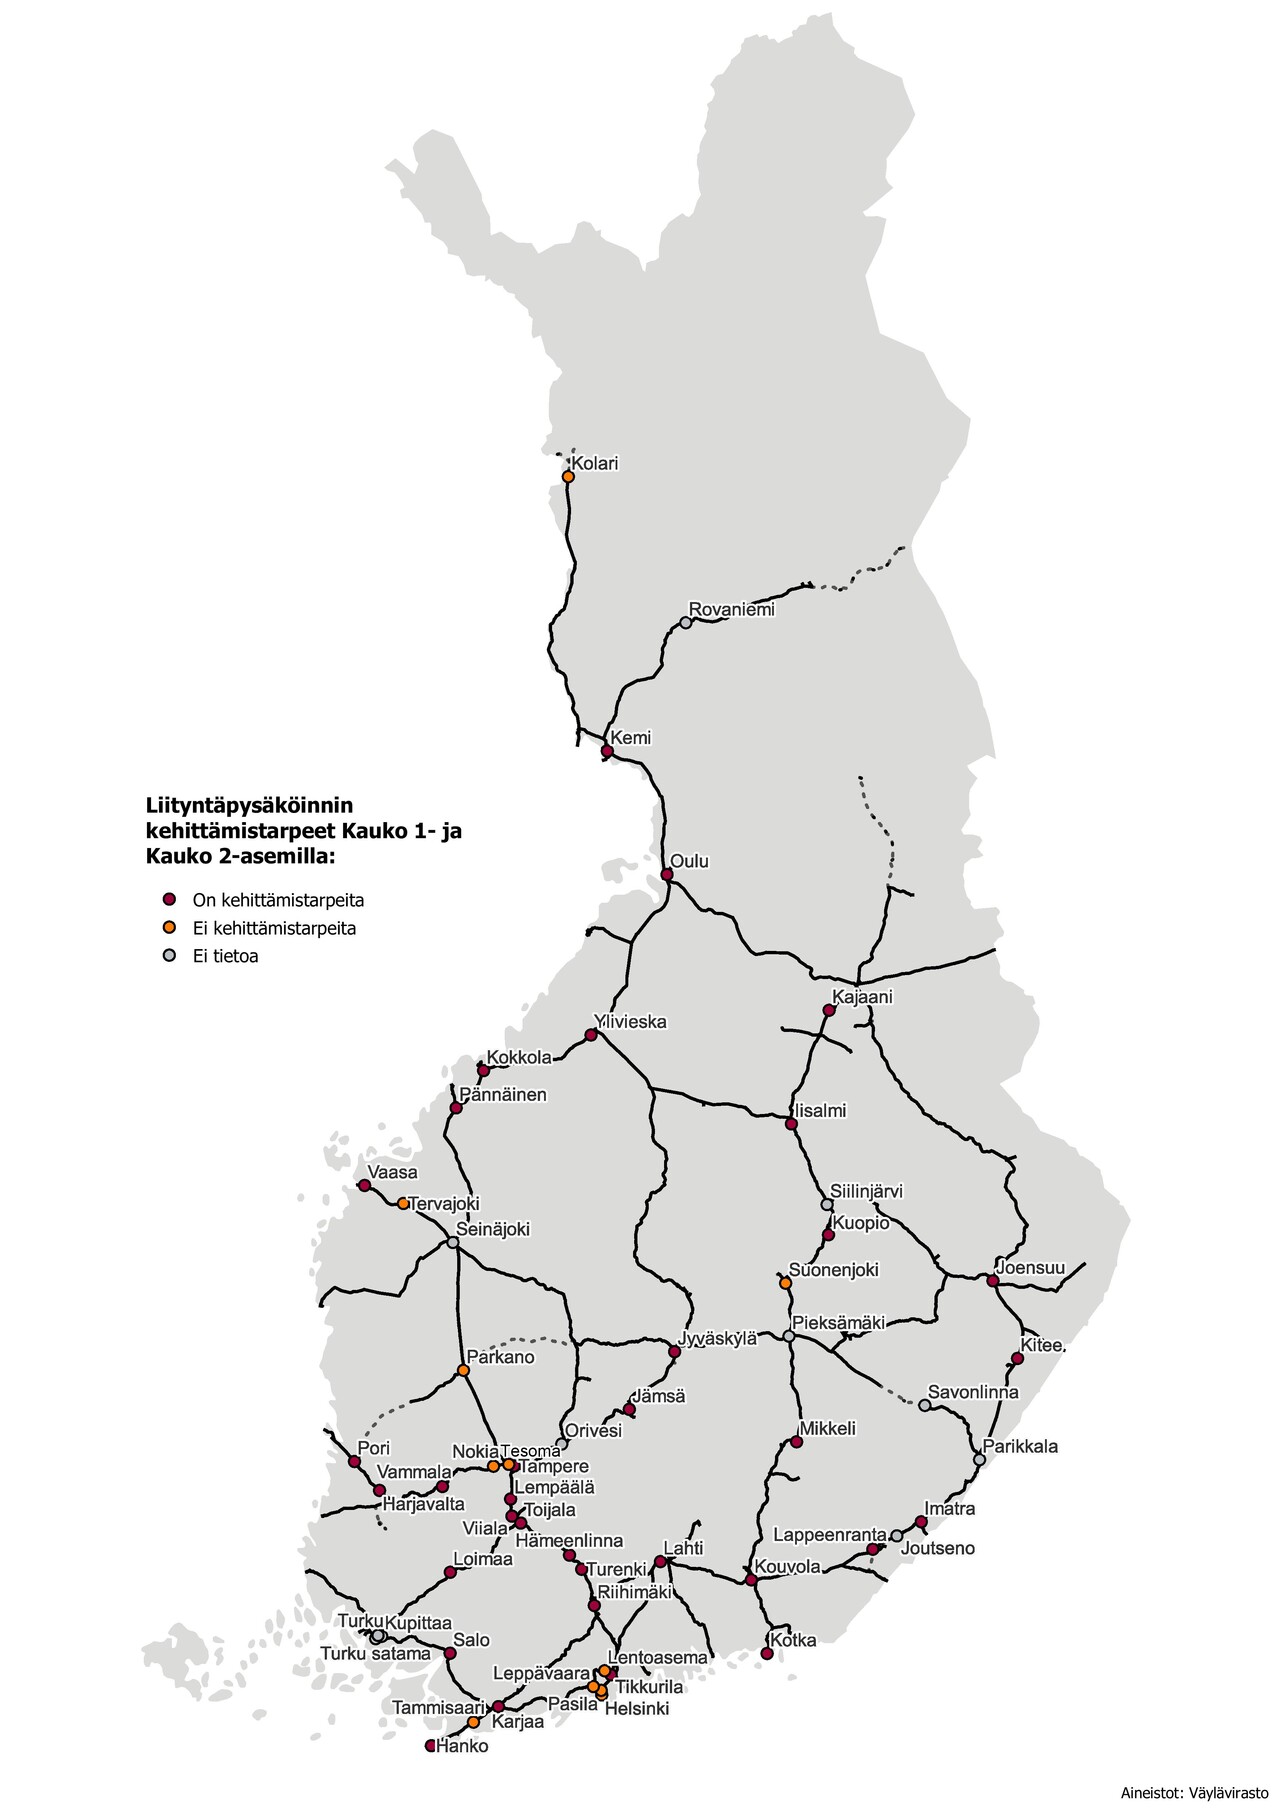 Kuvassa on Suomen kartalla liityntäpysököinnin kehitystarpeet Kauko 1- ja Kauko 2 -asemilla.